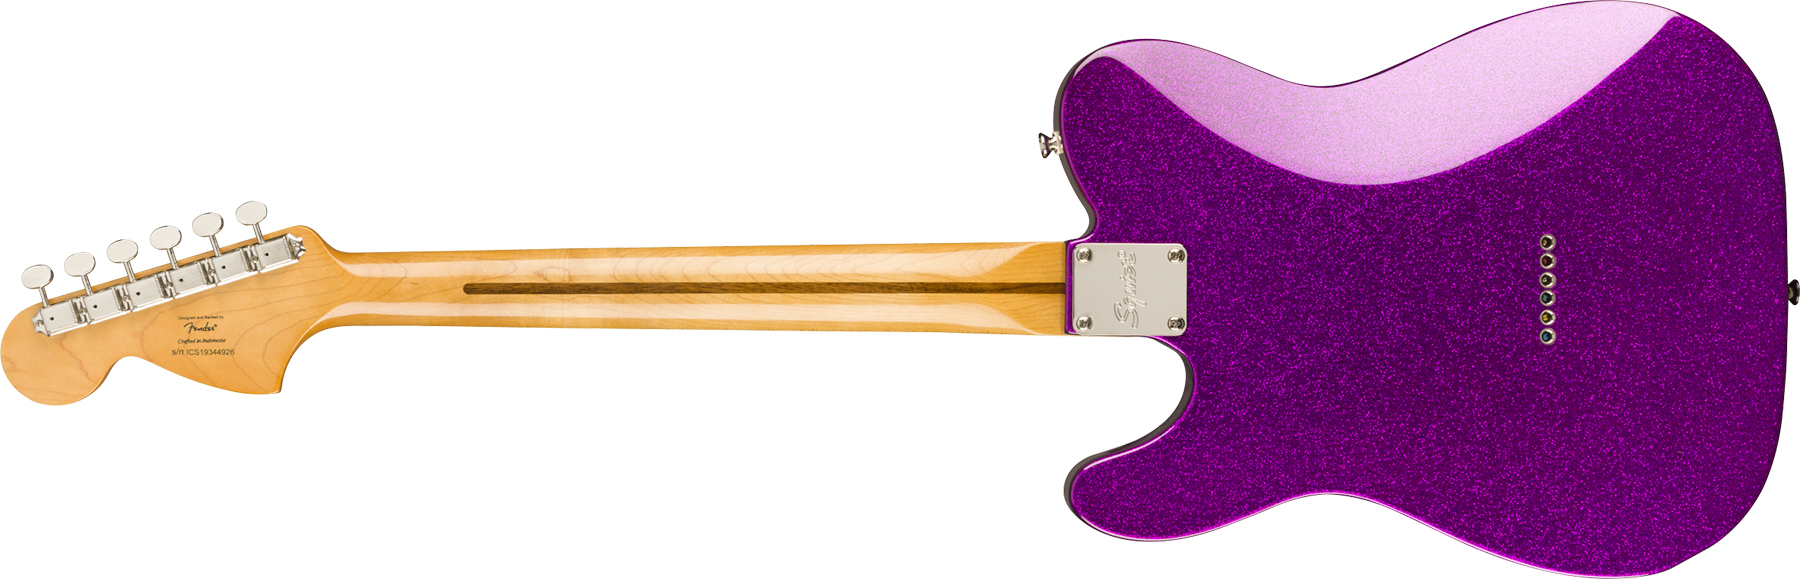 Squier Tele Deluxe Classic Vibe 70 Fsr Ltd 2020 Hh Htmn - Purple Sparkle - Tel shape electric guitar - Variation 1